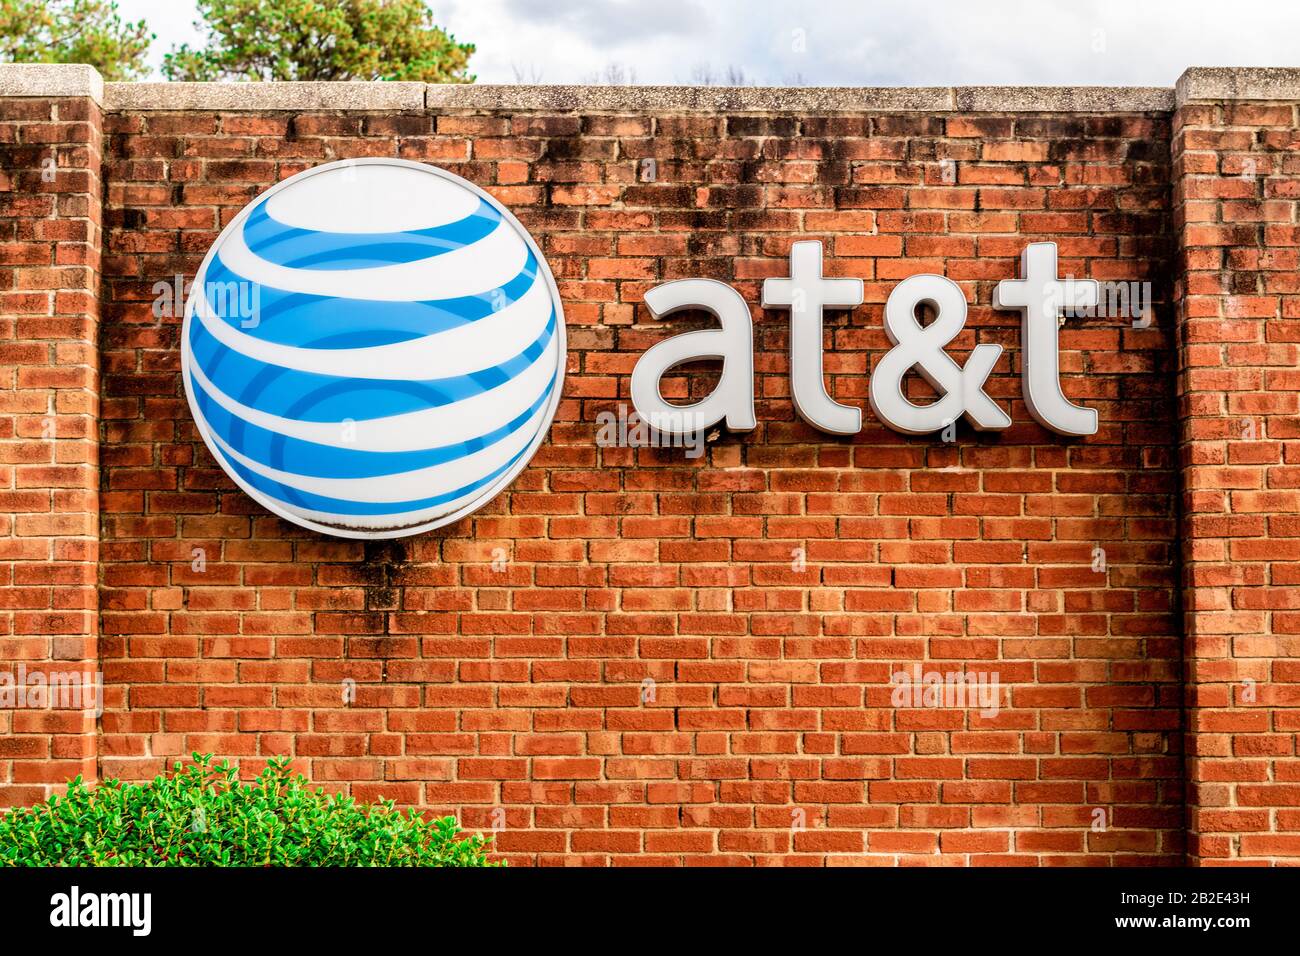 Charlotte, NC/USA - 14. Dezember 2019: Mittlerer horizontaler Schuss von Marke "AT&T" und Logo auf einer roten Ziegelwand mit Bäumen, geparkten Autos und Sturm c Stockfoto